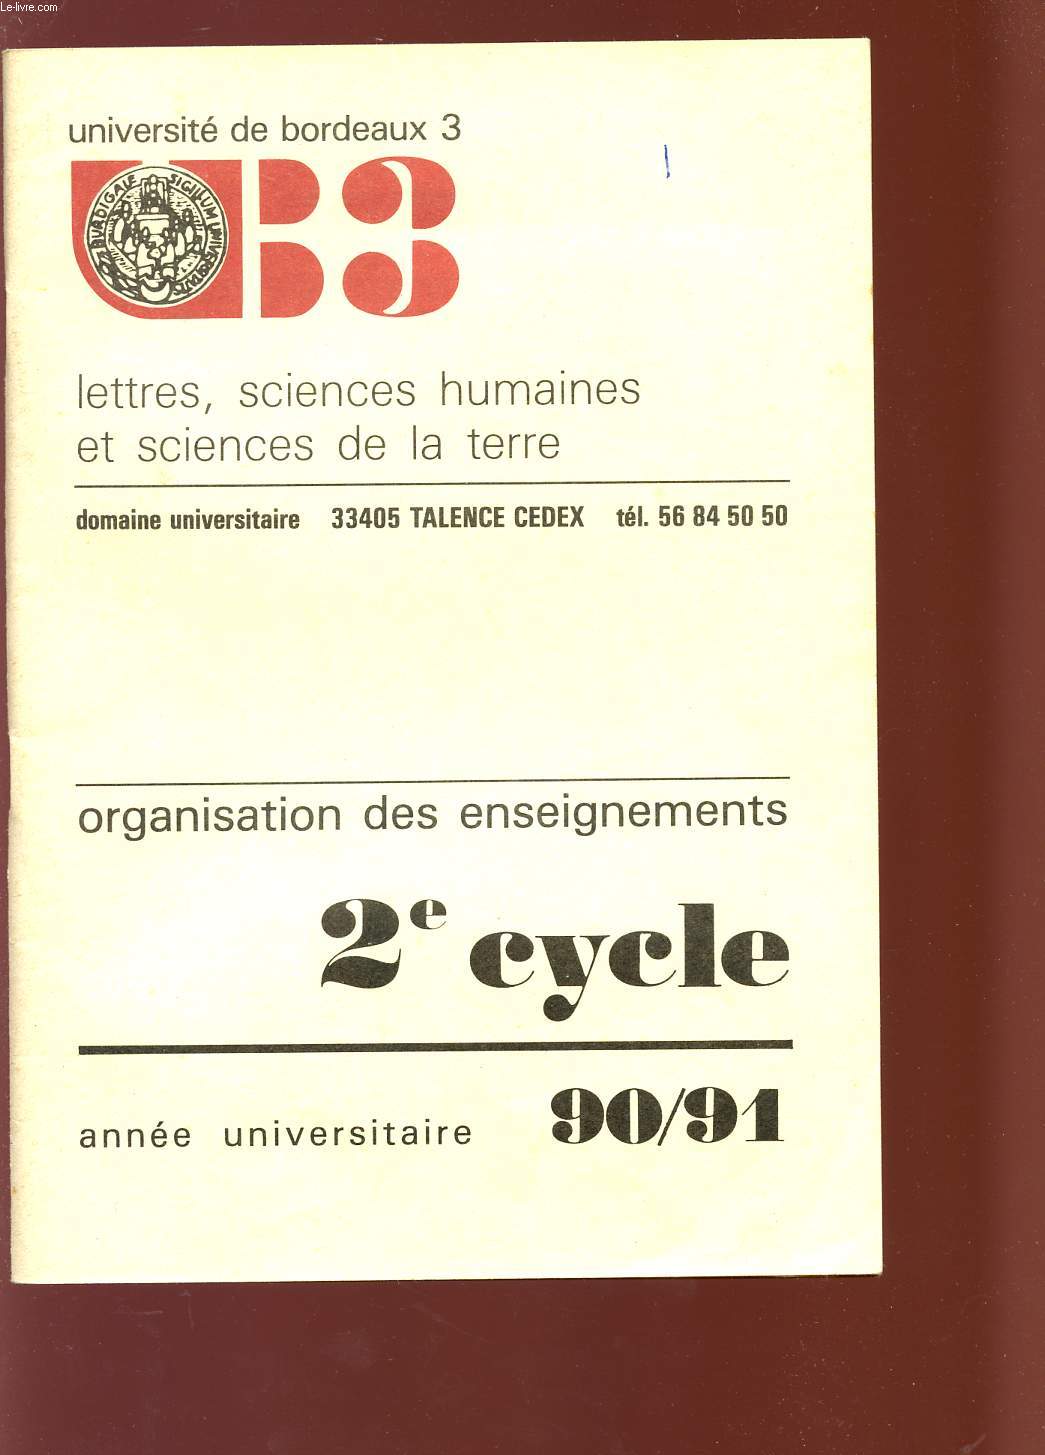 LETTRES, SCIENCES HUMAINES ET SCIENCES DE LA TERRE - ORGANISATION DES ENSEIGNEMENTS - 2 CYCLE - ANNE UNIVERSITAIRE 90 / 91.